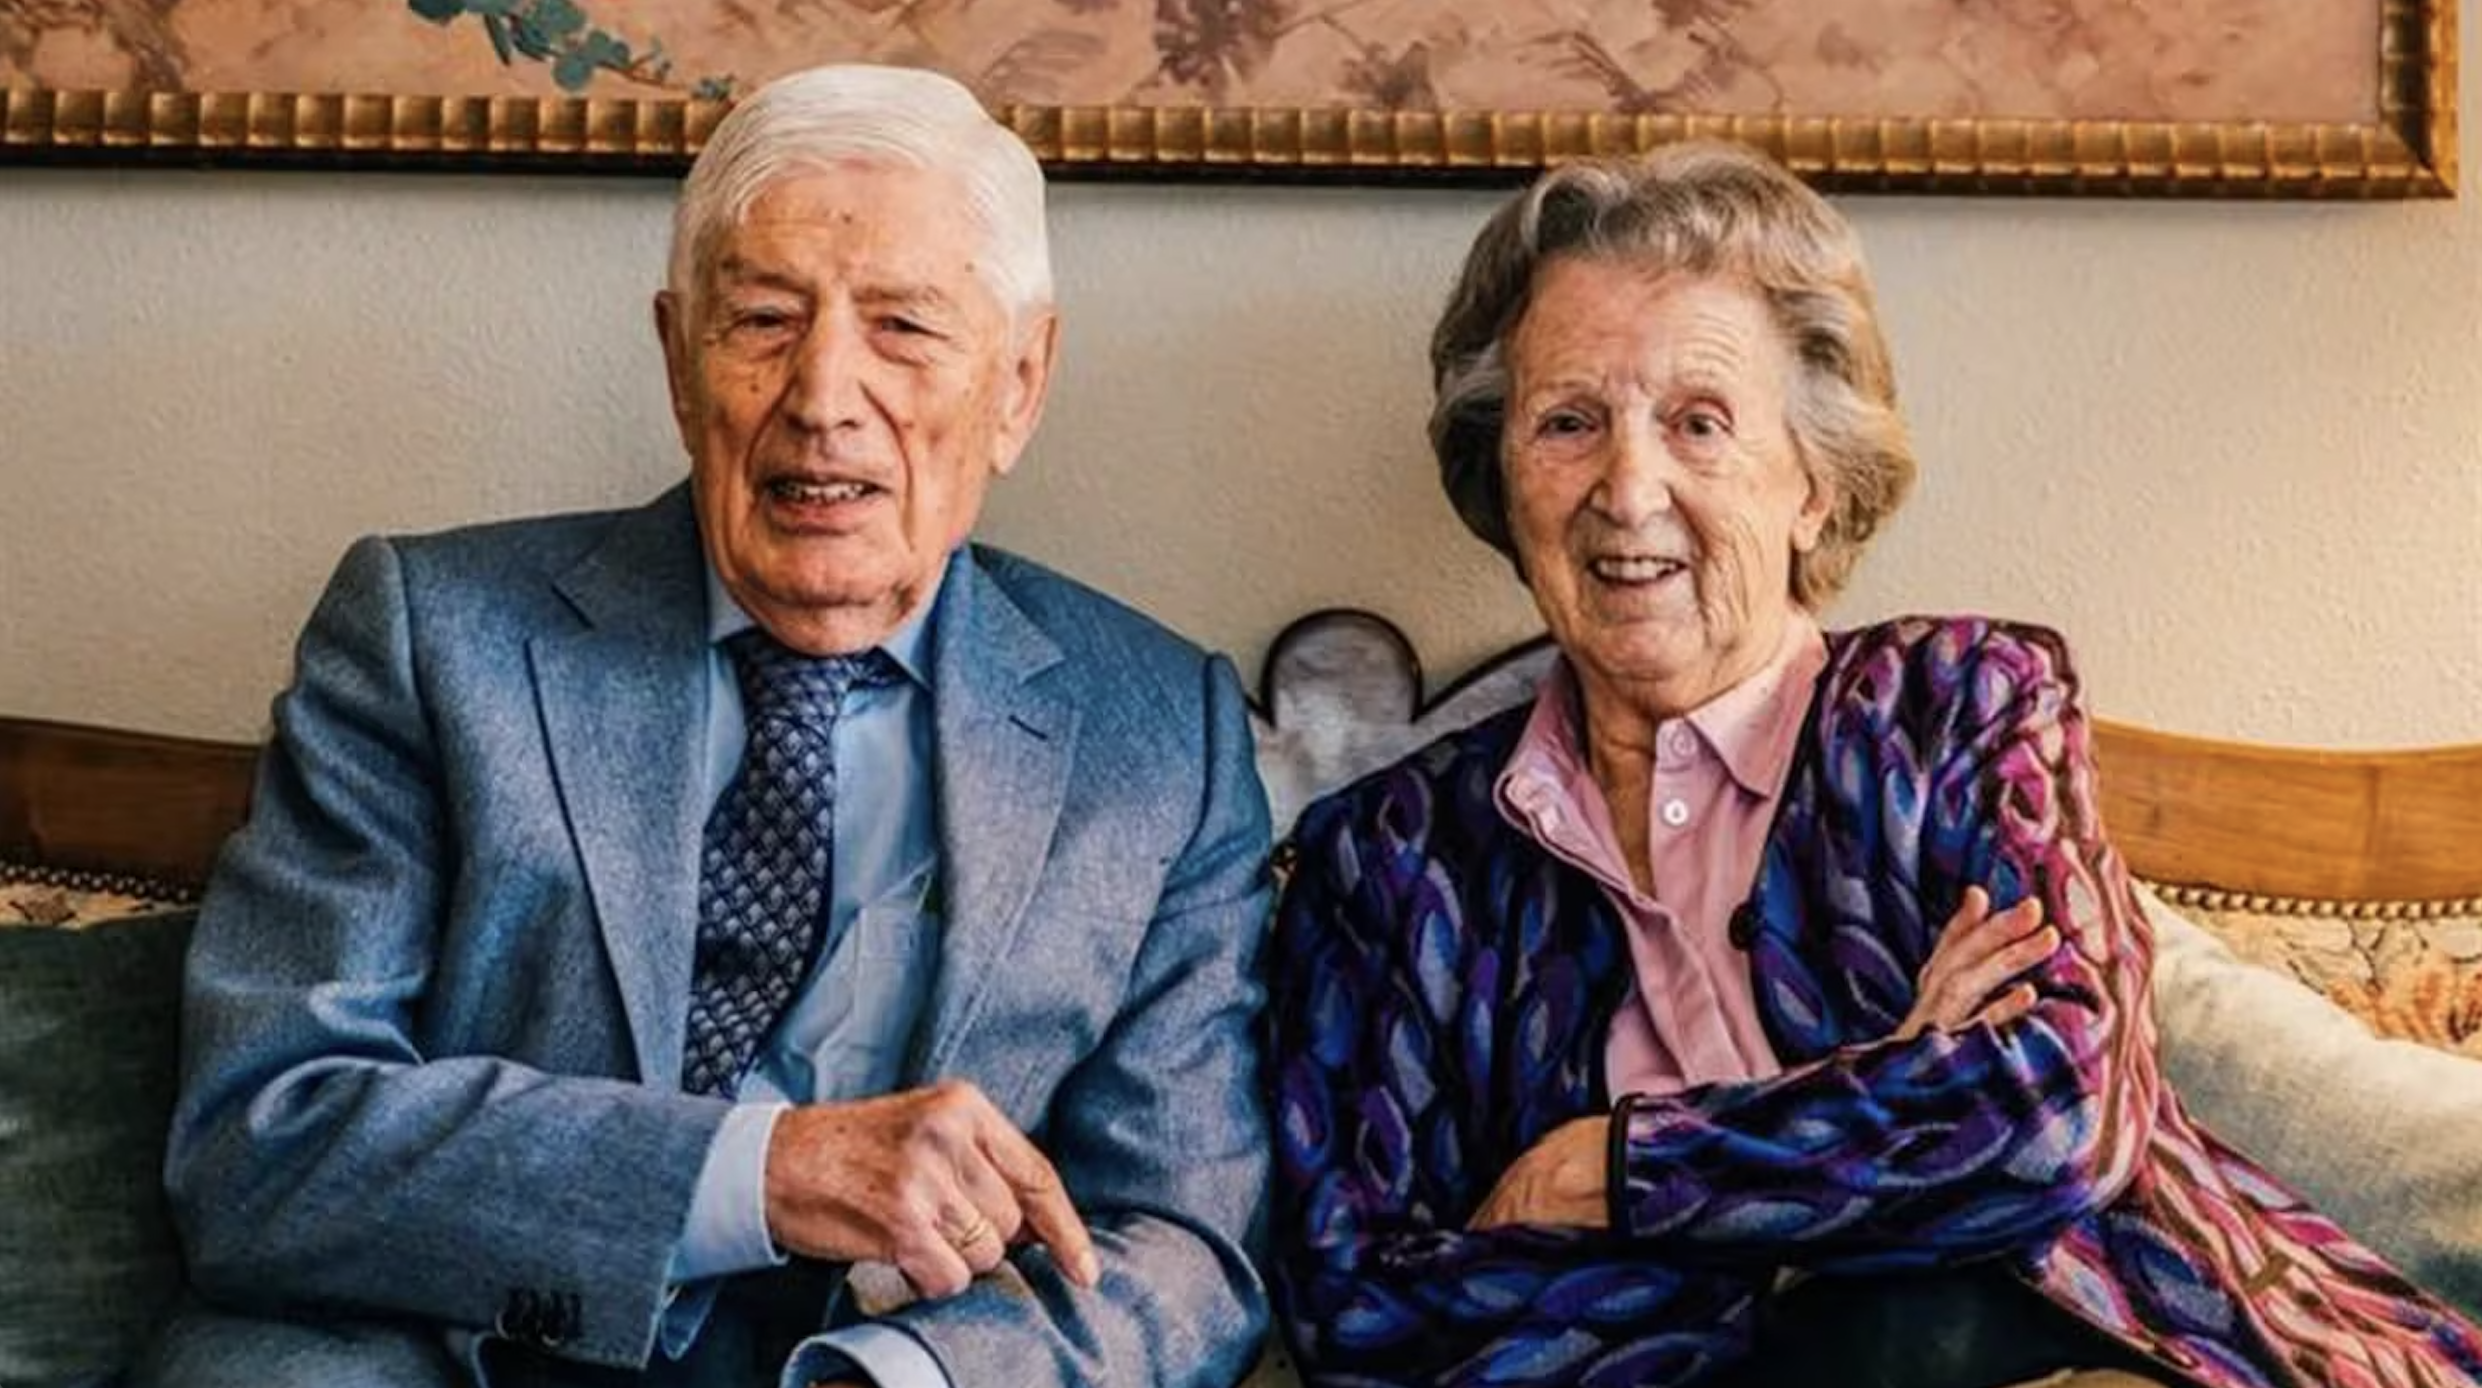 Tras 70 años juntos: Exprimer ministro neerlandés y su esposa mueren tomados de la mano en eutanasia conjunta